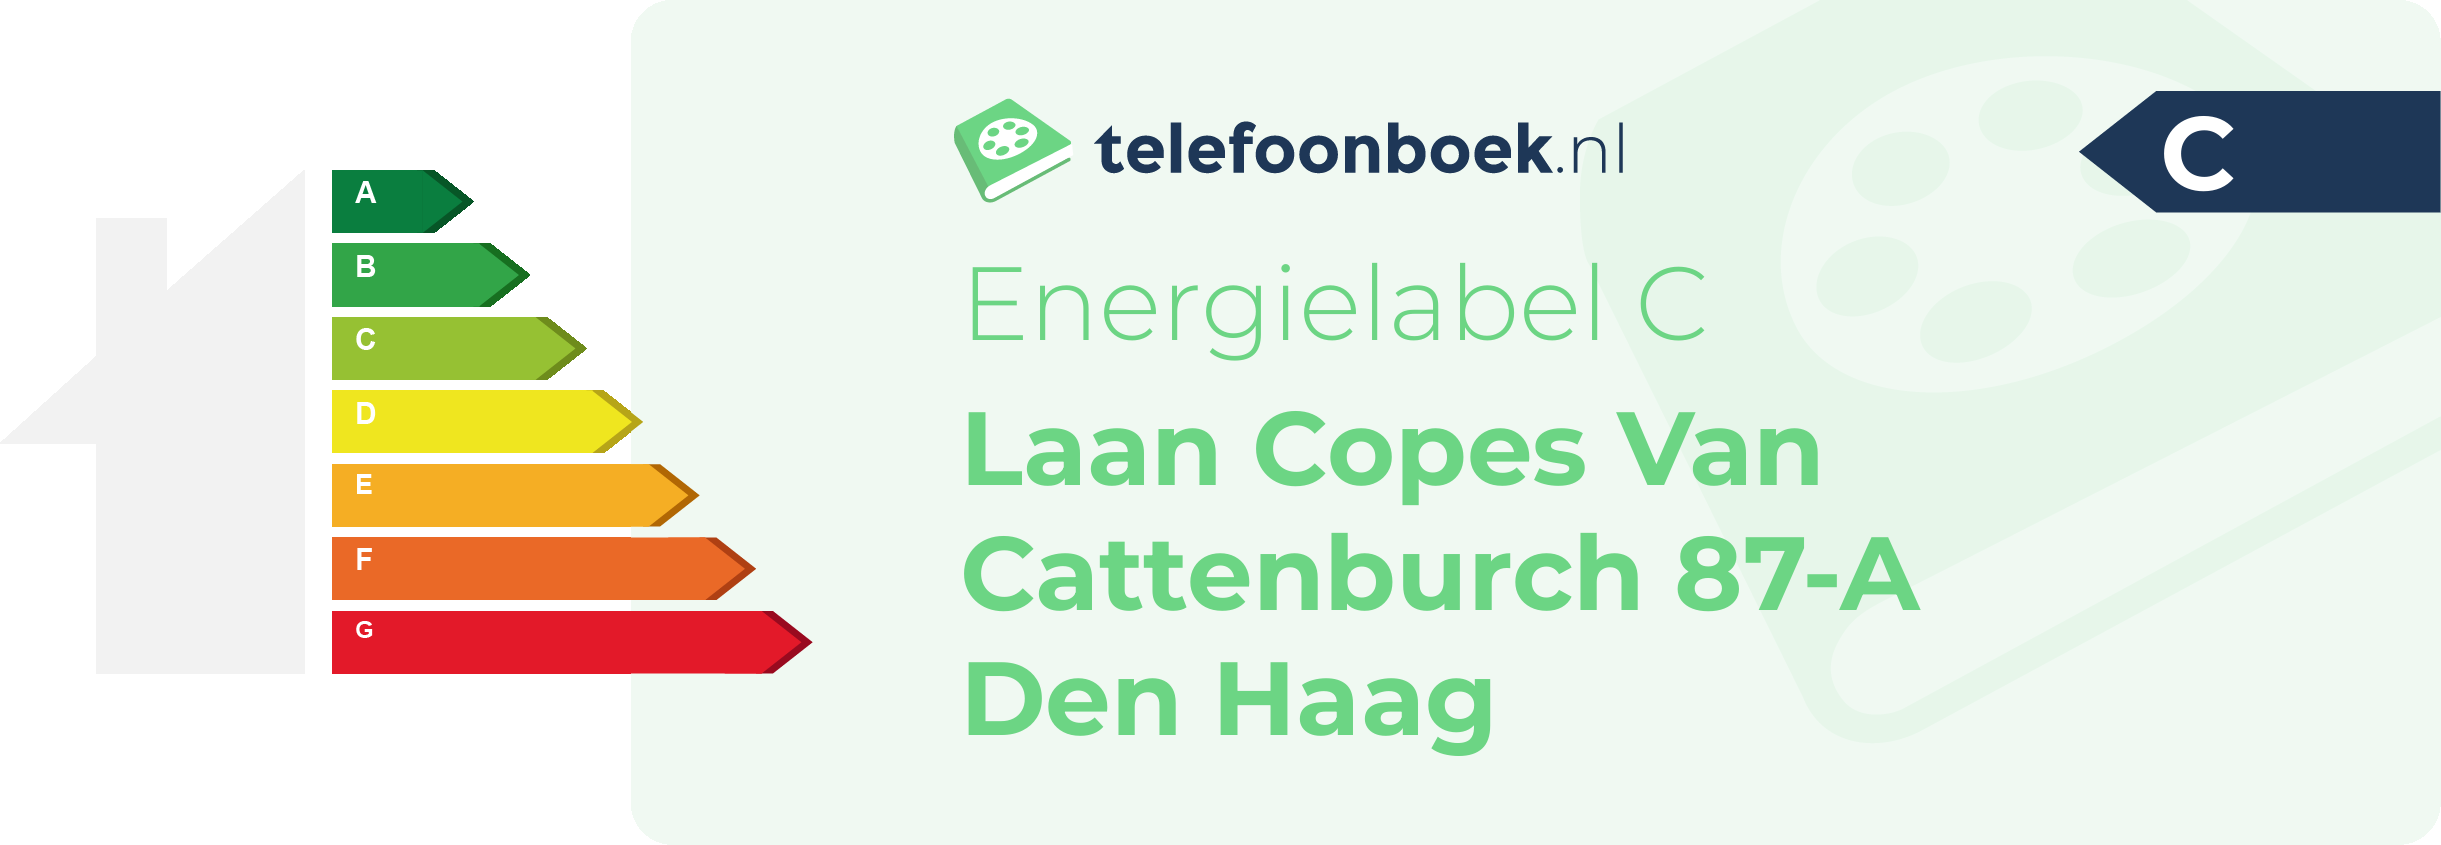 Energielabel Laan Copes Van Cattenburch 87-A Den Haag